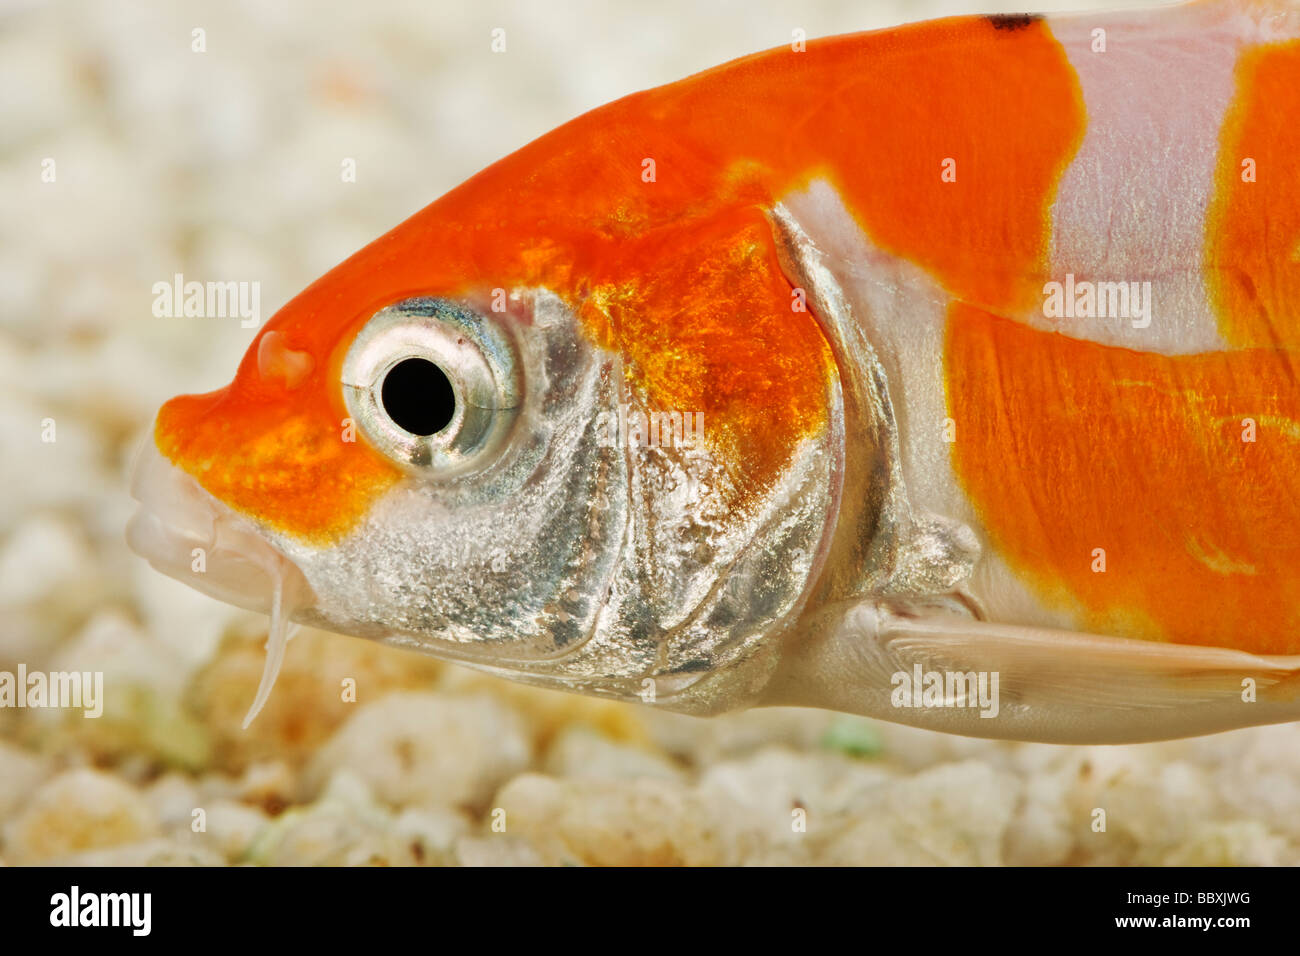 Uno spettacolare pesce Koi addomesticati varietà della carpa comune Cyprinus carpio allevati in diverse configurazioni di colore contro uno sfondo bianco Foto Stock